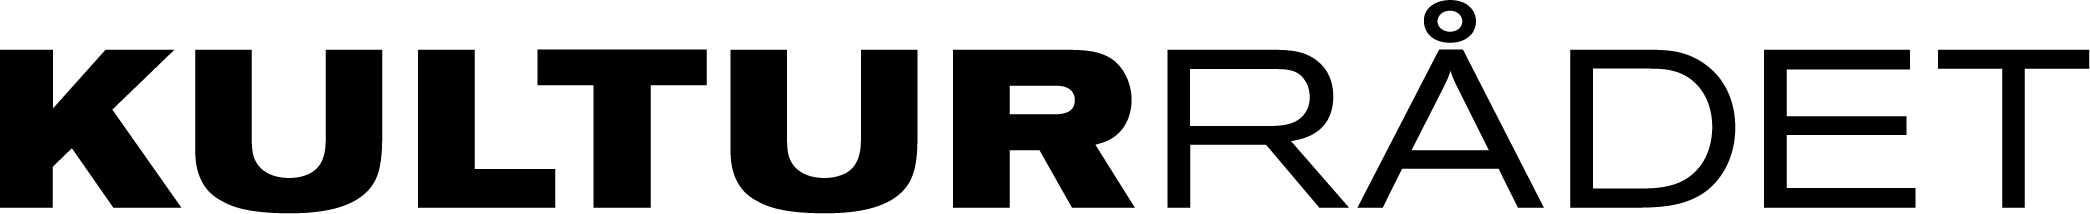 kulturradet_logo